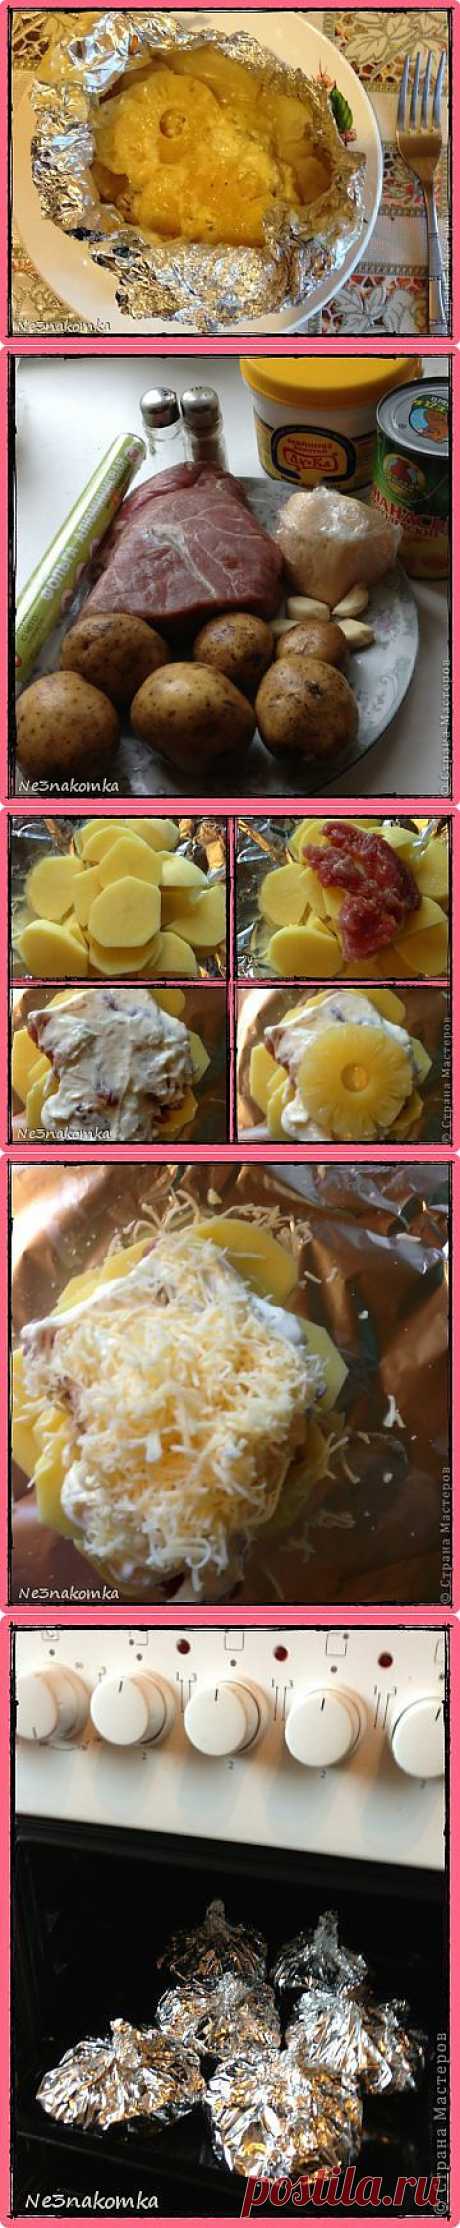 Картошка, запеченная с мясом и ананасами | Страна Мастеров